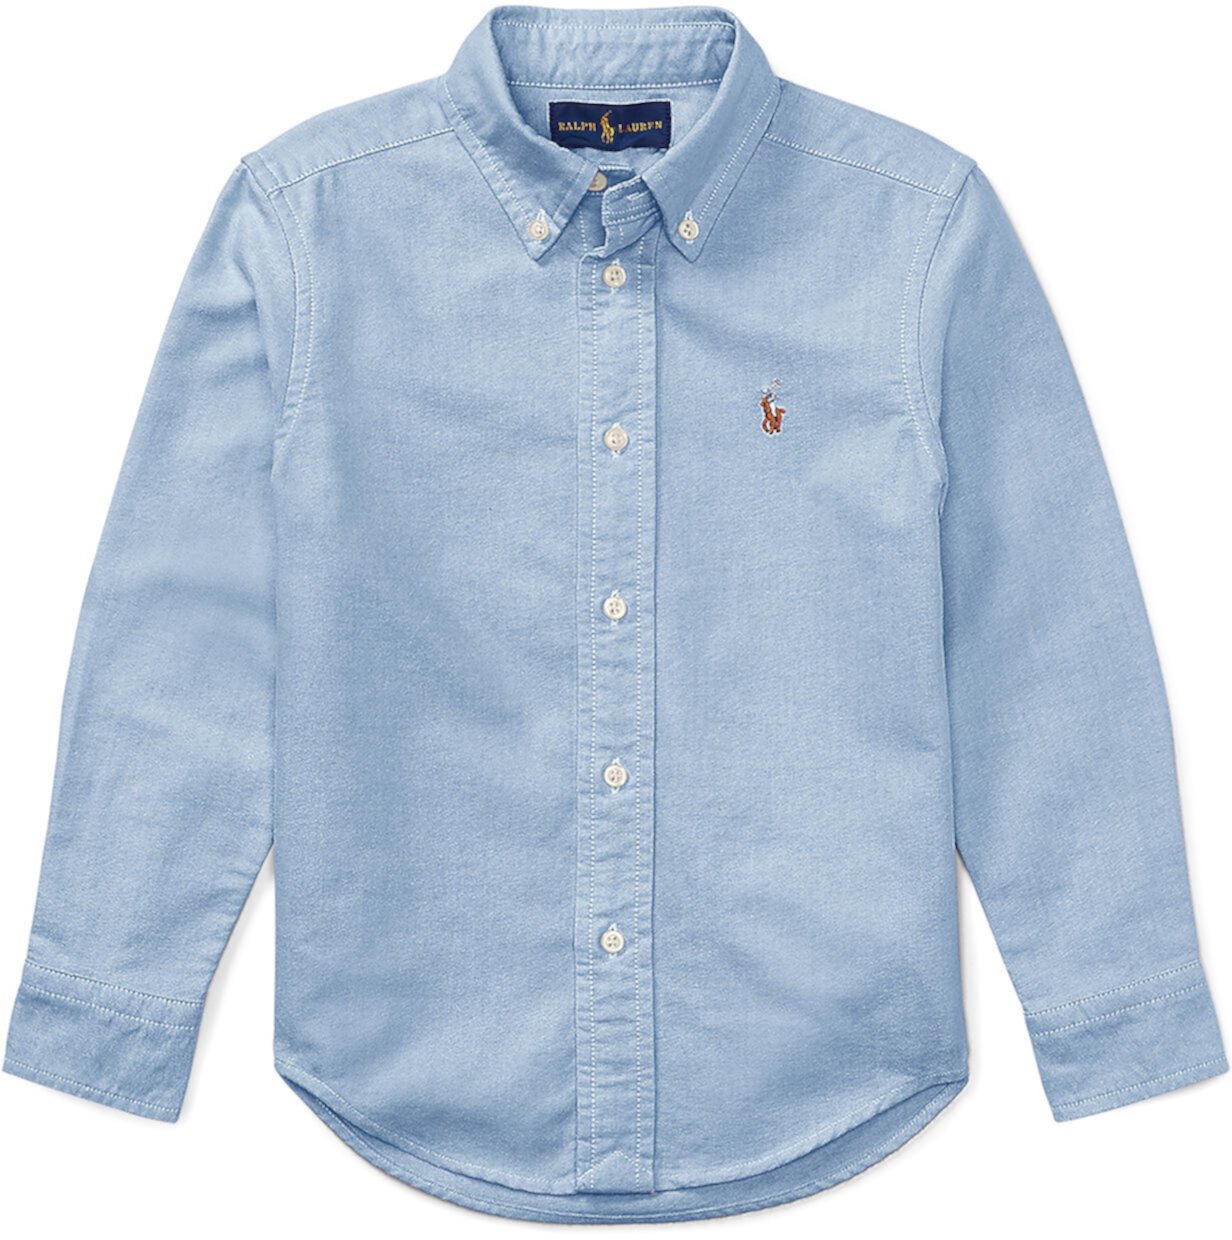 Хлопковая спортивная рубашка Oxford (для маленьких детей) Polo Ralph Lauren